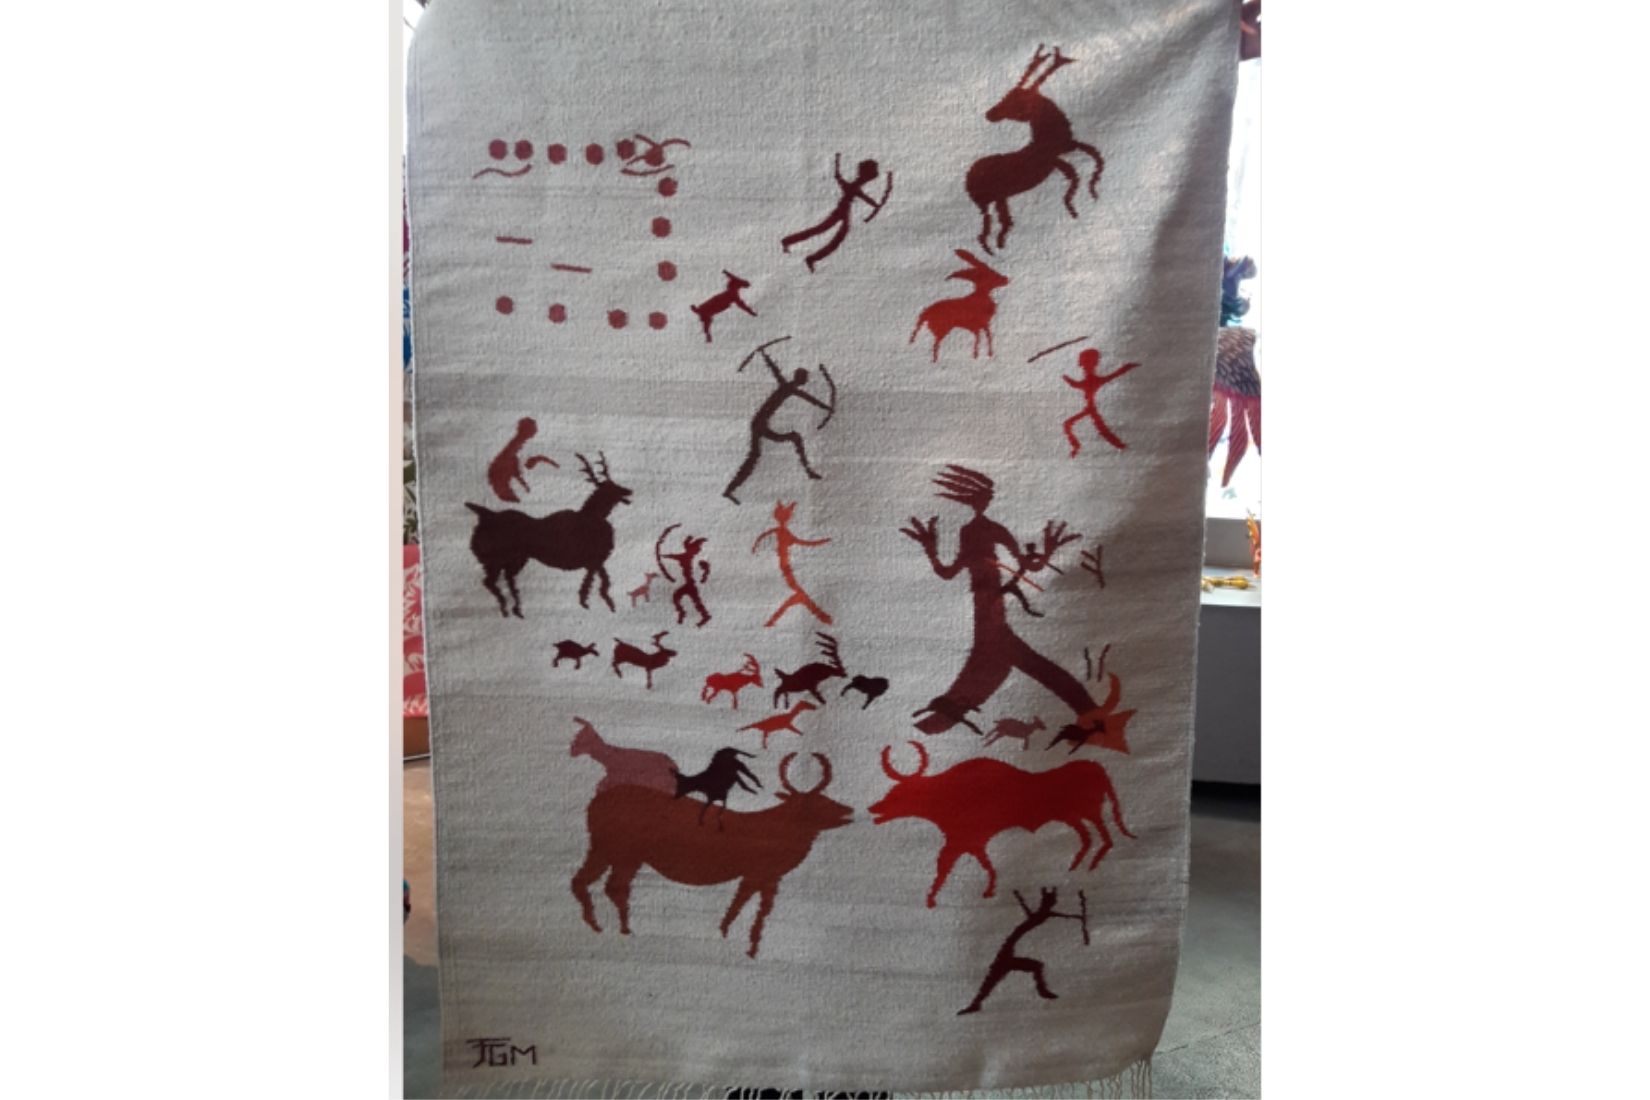 Textil de lana inspirado en pinturas rupestres. Artesano desconocido. Teotitlán del Valle, Oax. (Foto: TiendaMAP).